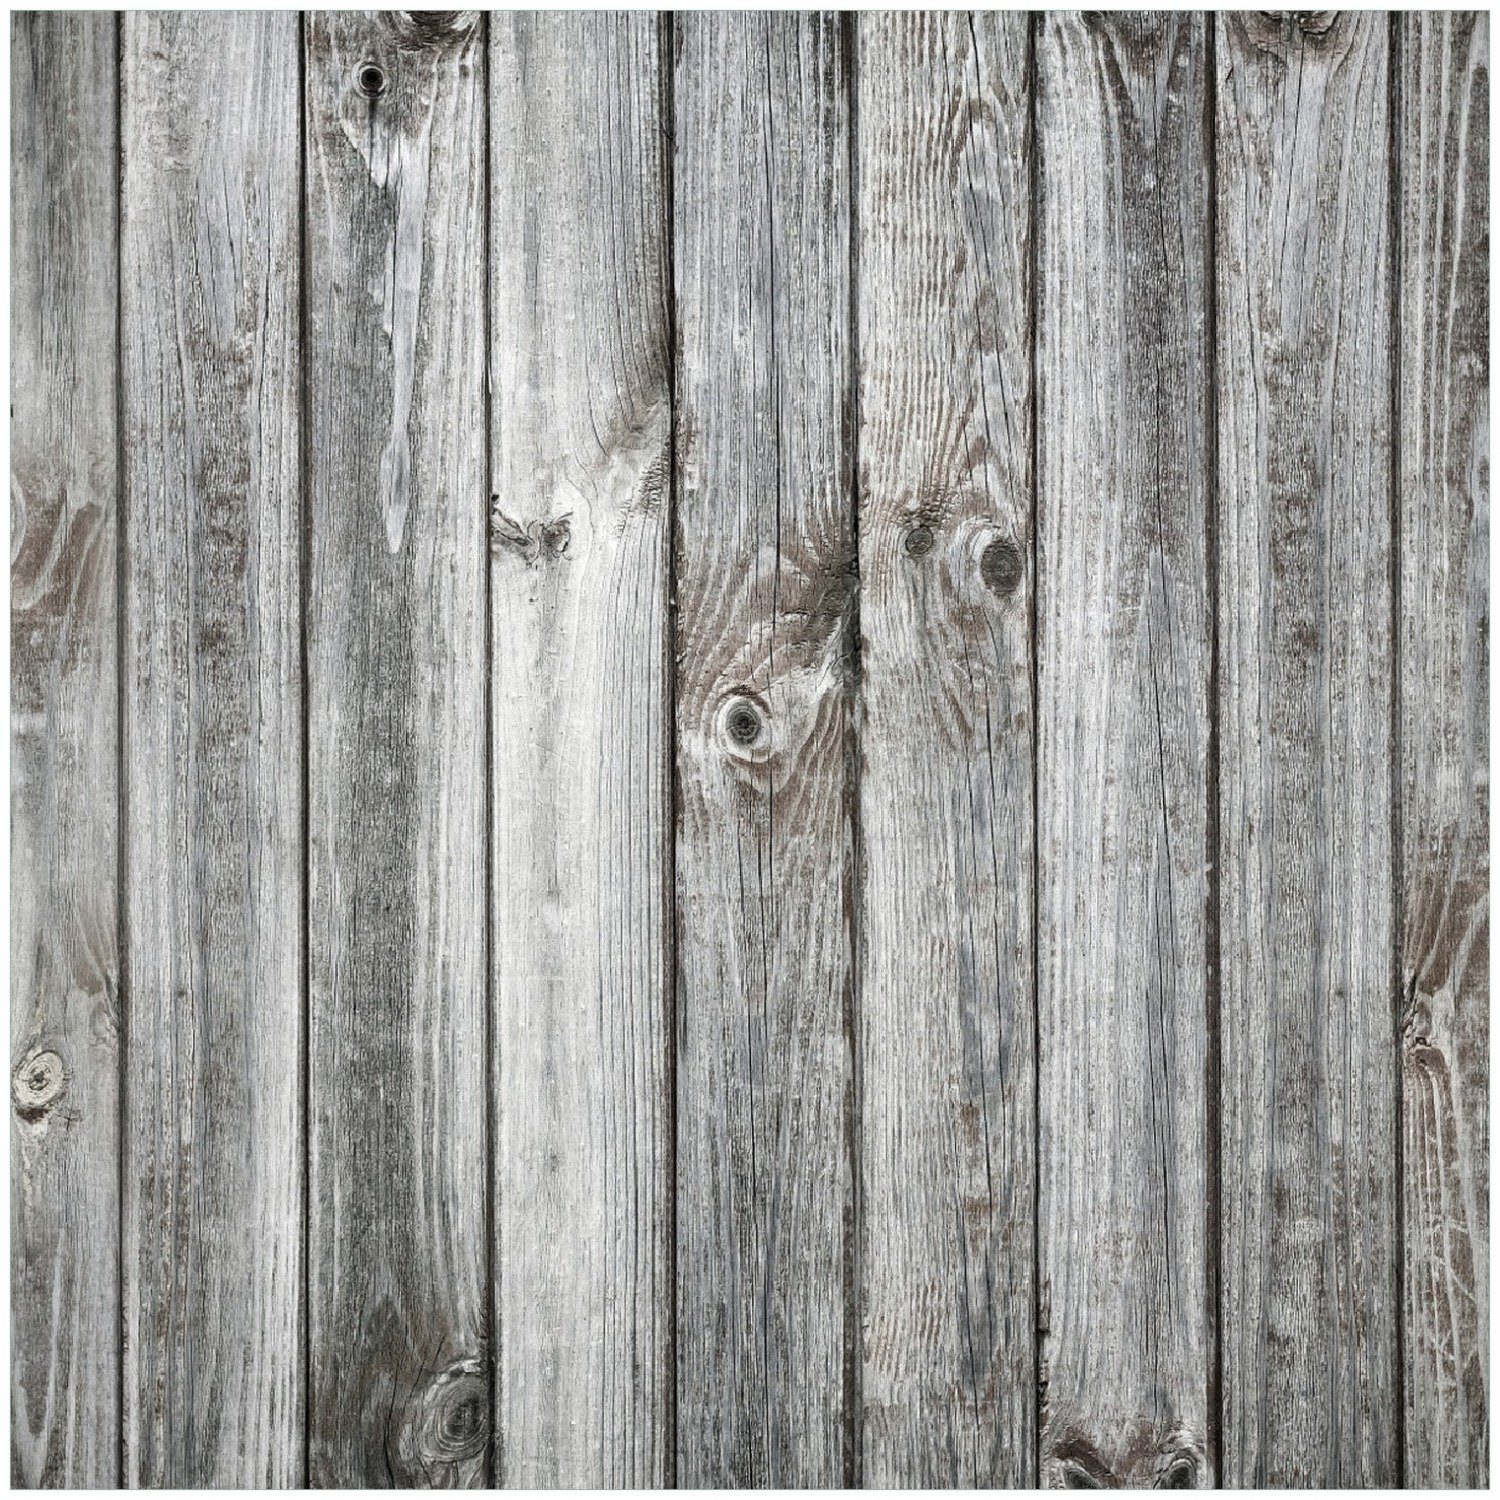 Wallario Memoboard Holz-Optik Textur hellgraues Holz Paneele Dielen mit Asteinschlüssen